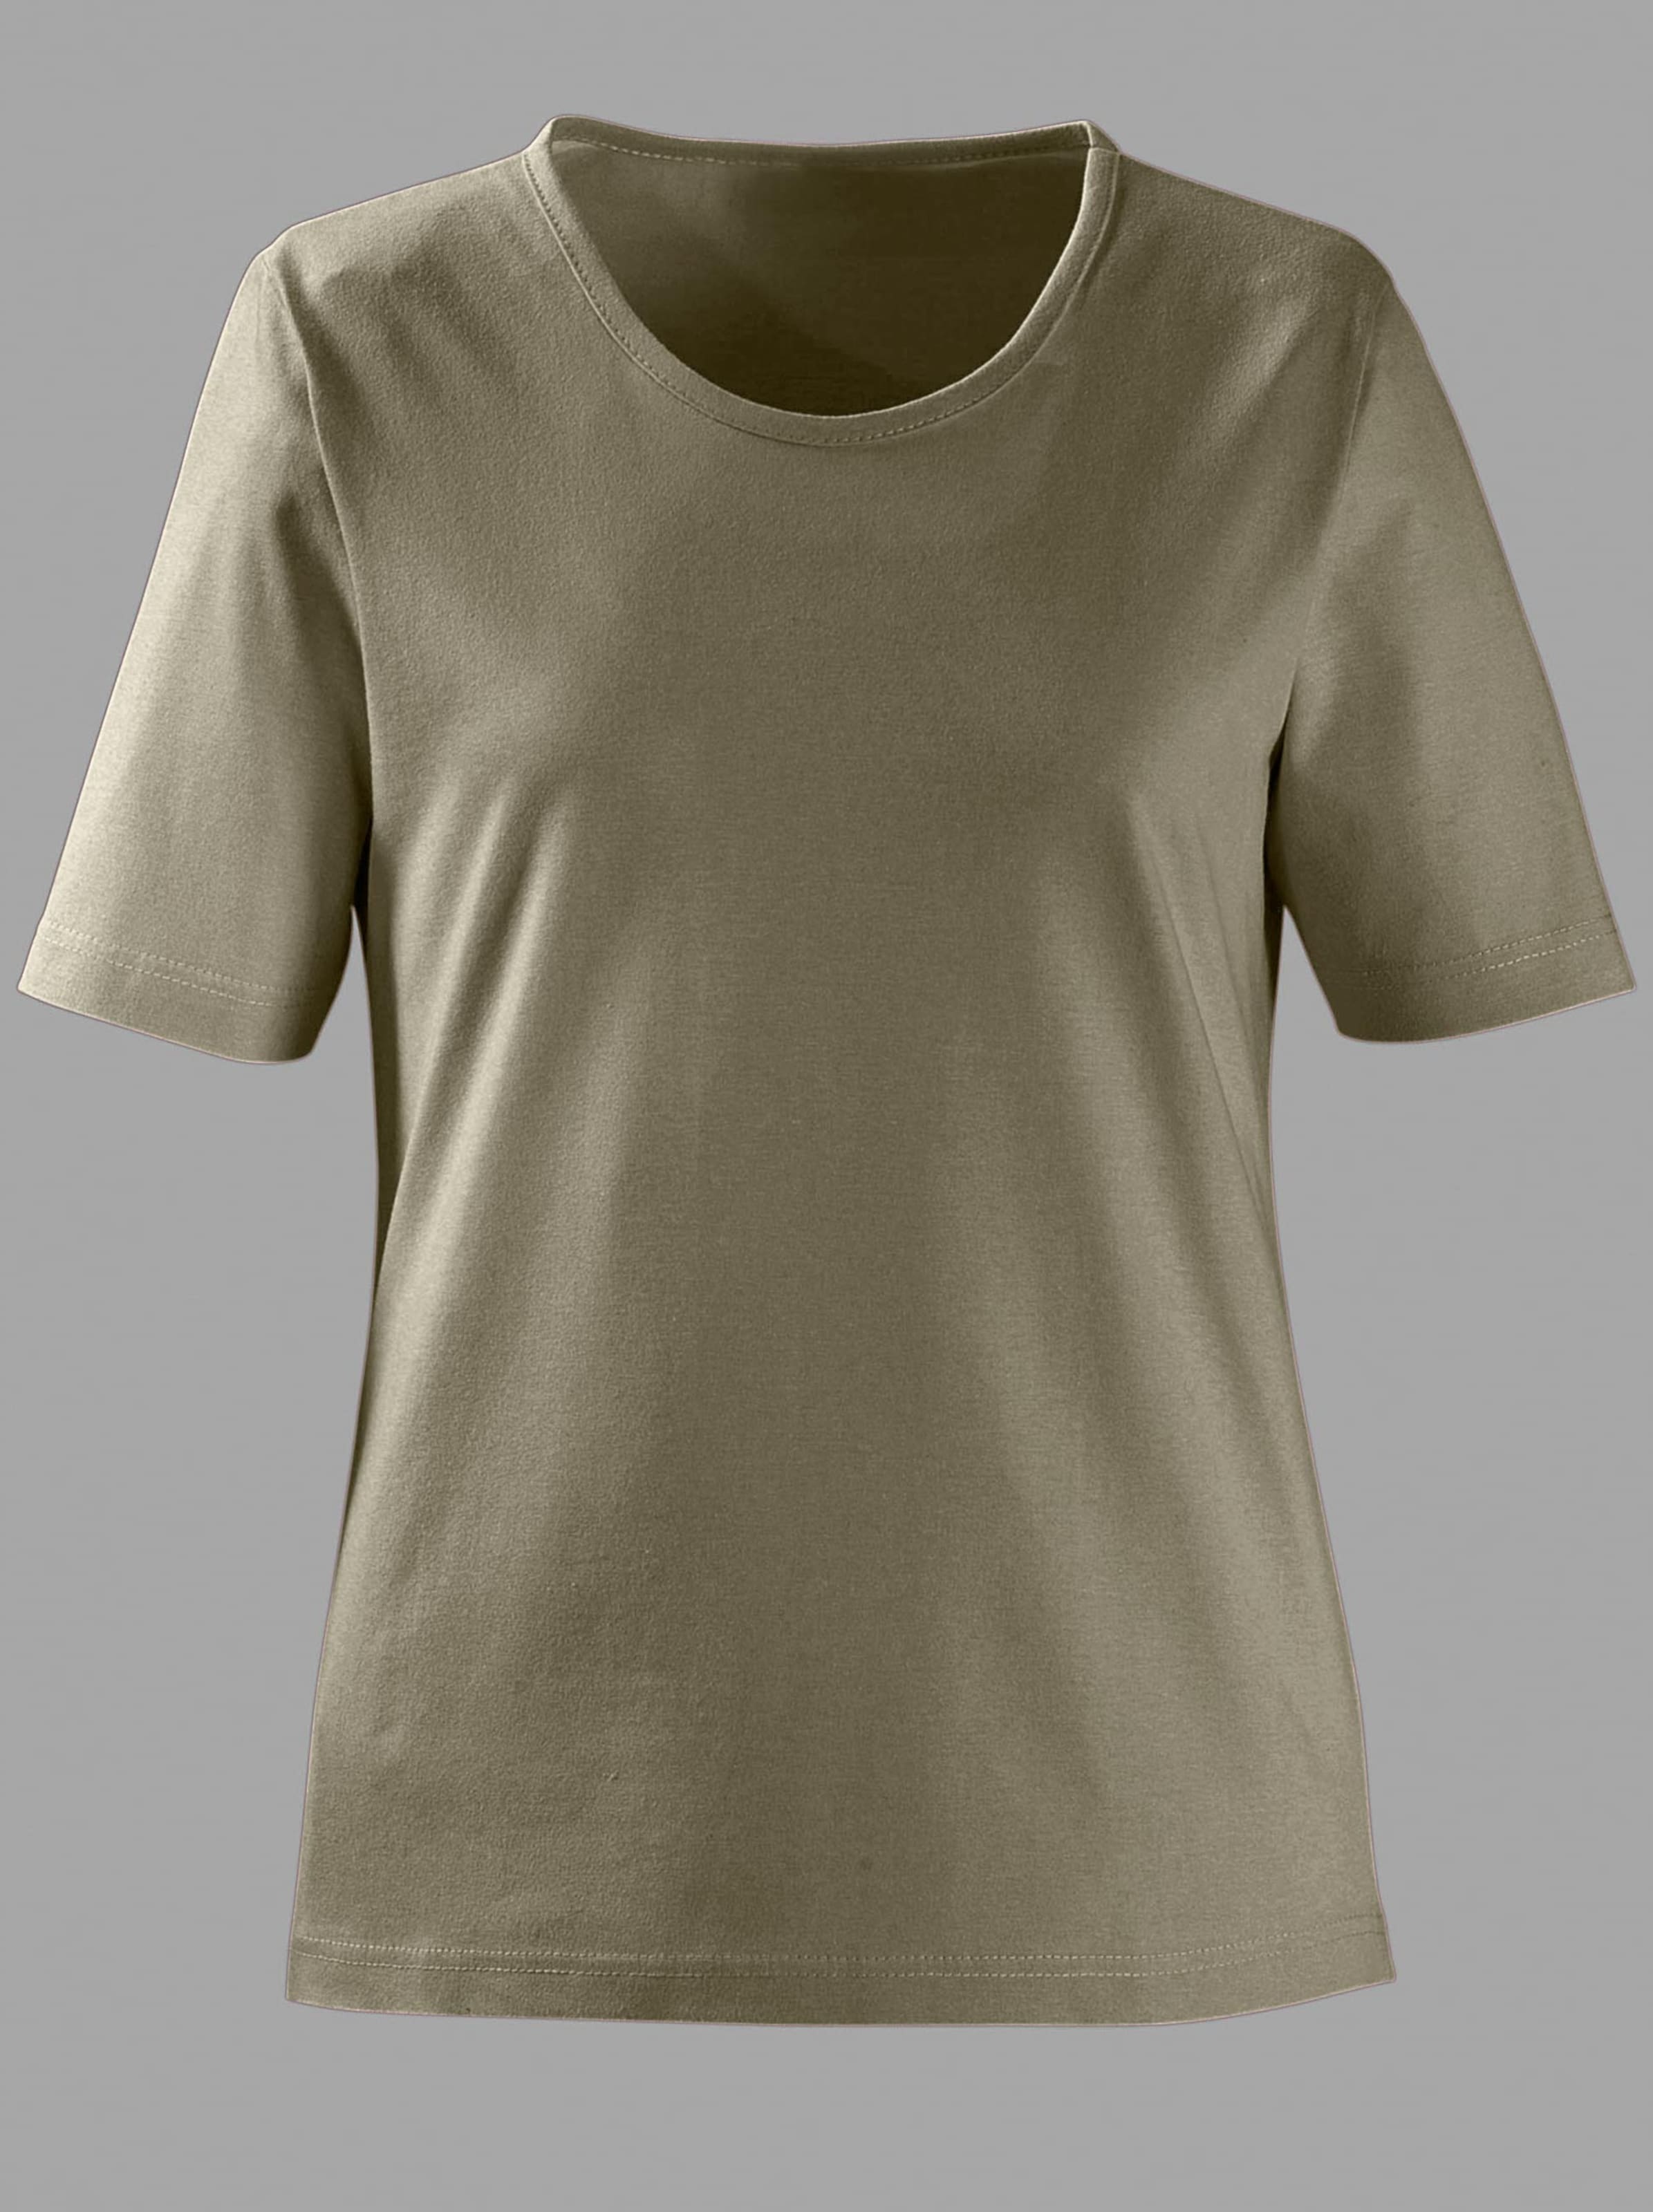 Damenmode Shirts Rundhalsshirt in oliv 